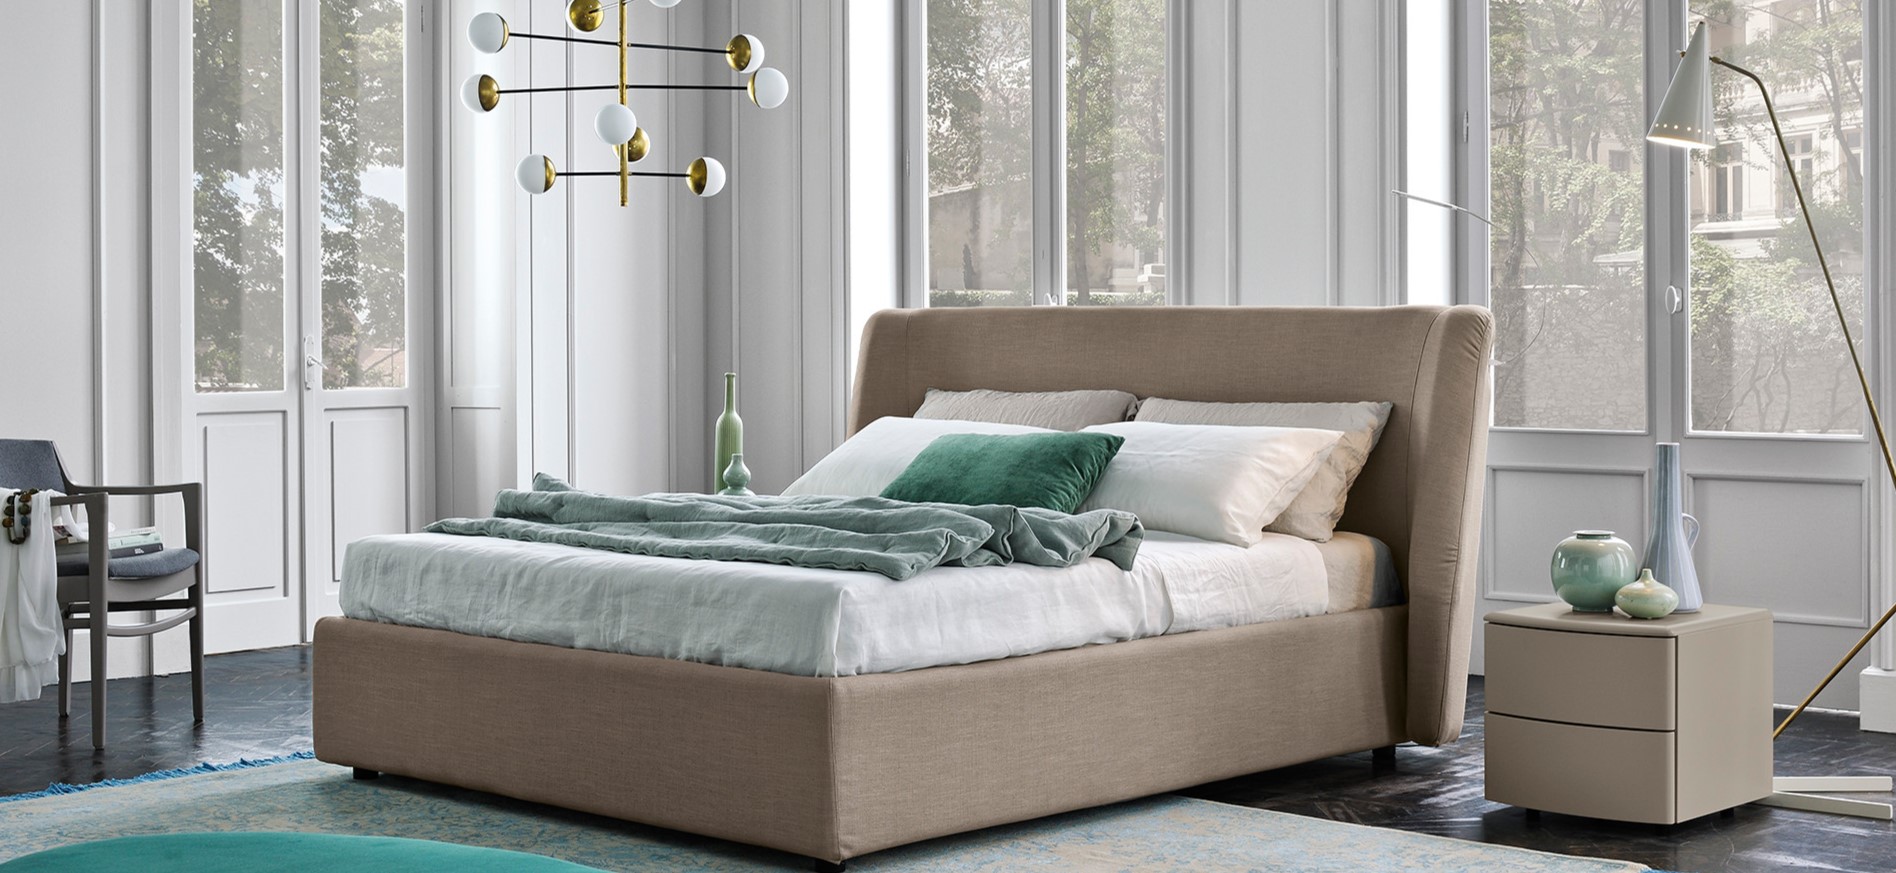 Как выбрать качественную кровать: основные правила